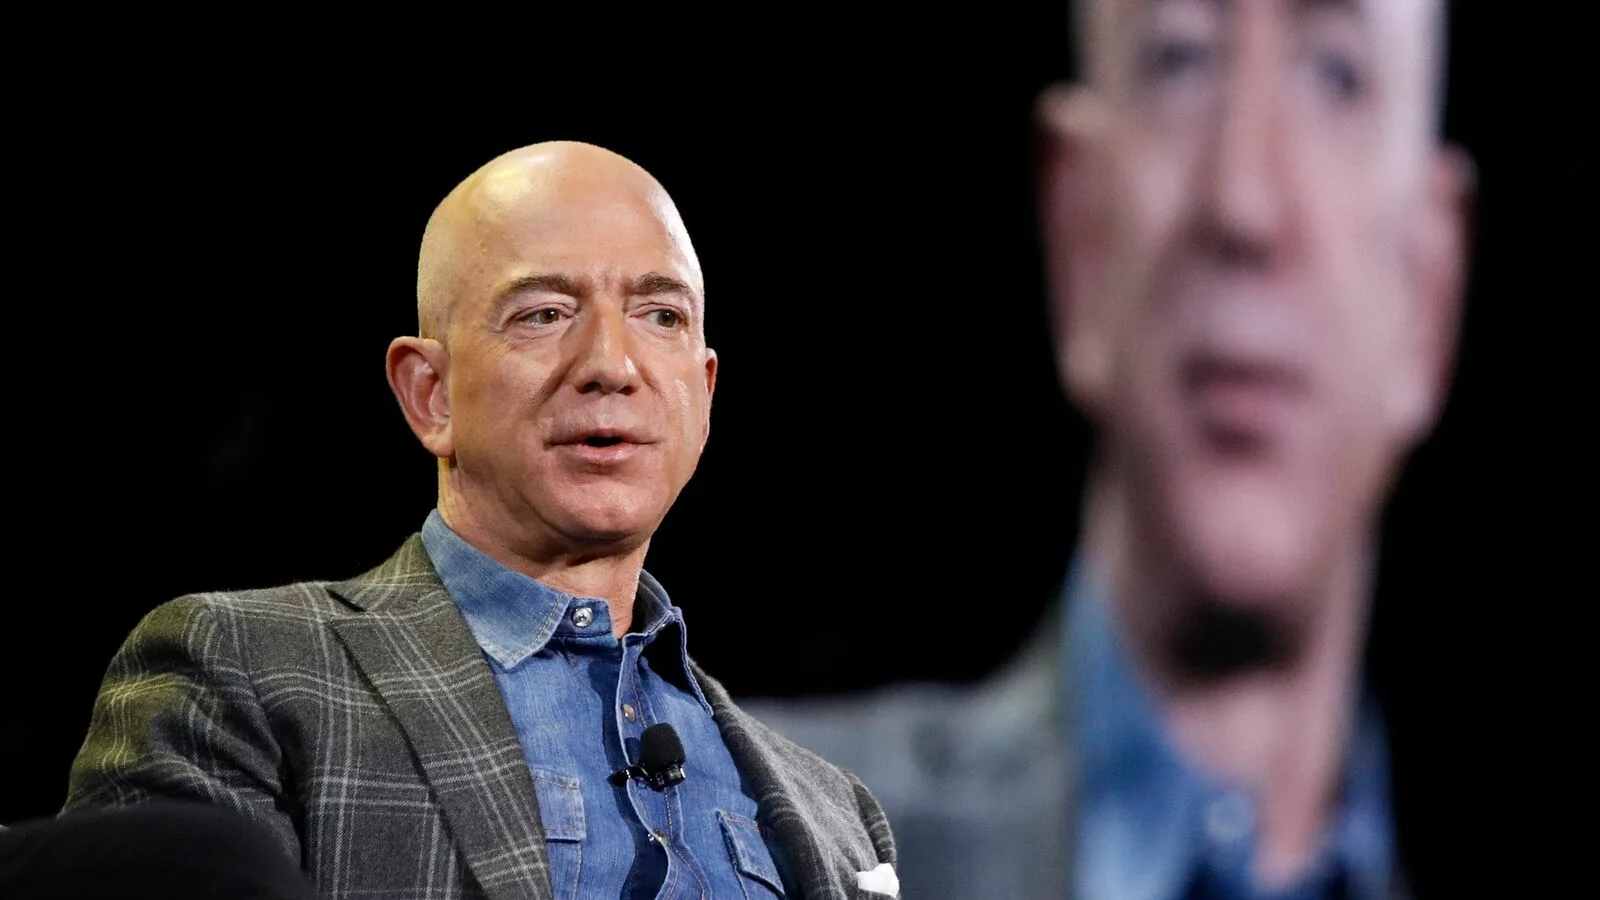 Jeff Bezos sells $2 Billion worth of Amazon shares in latest stock dump